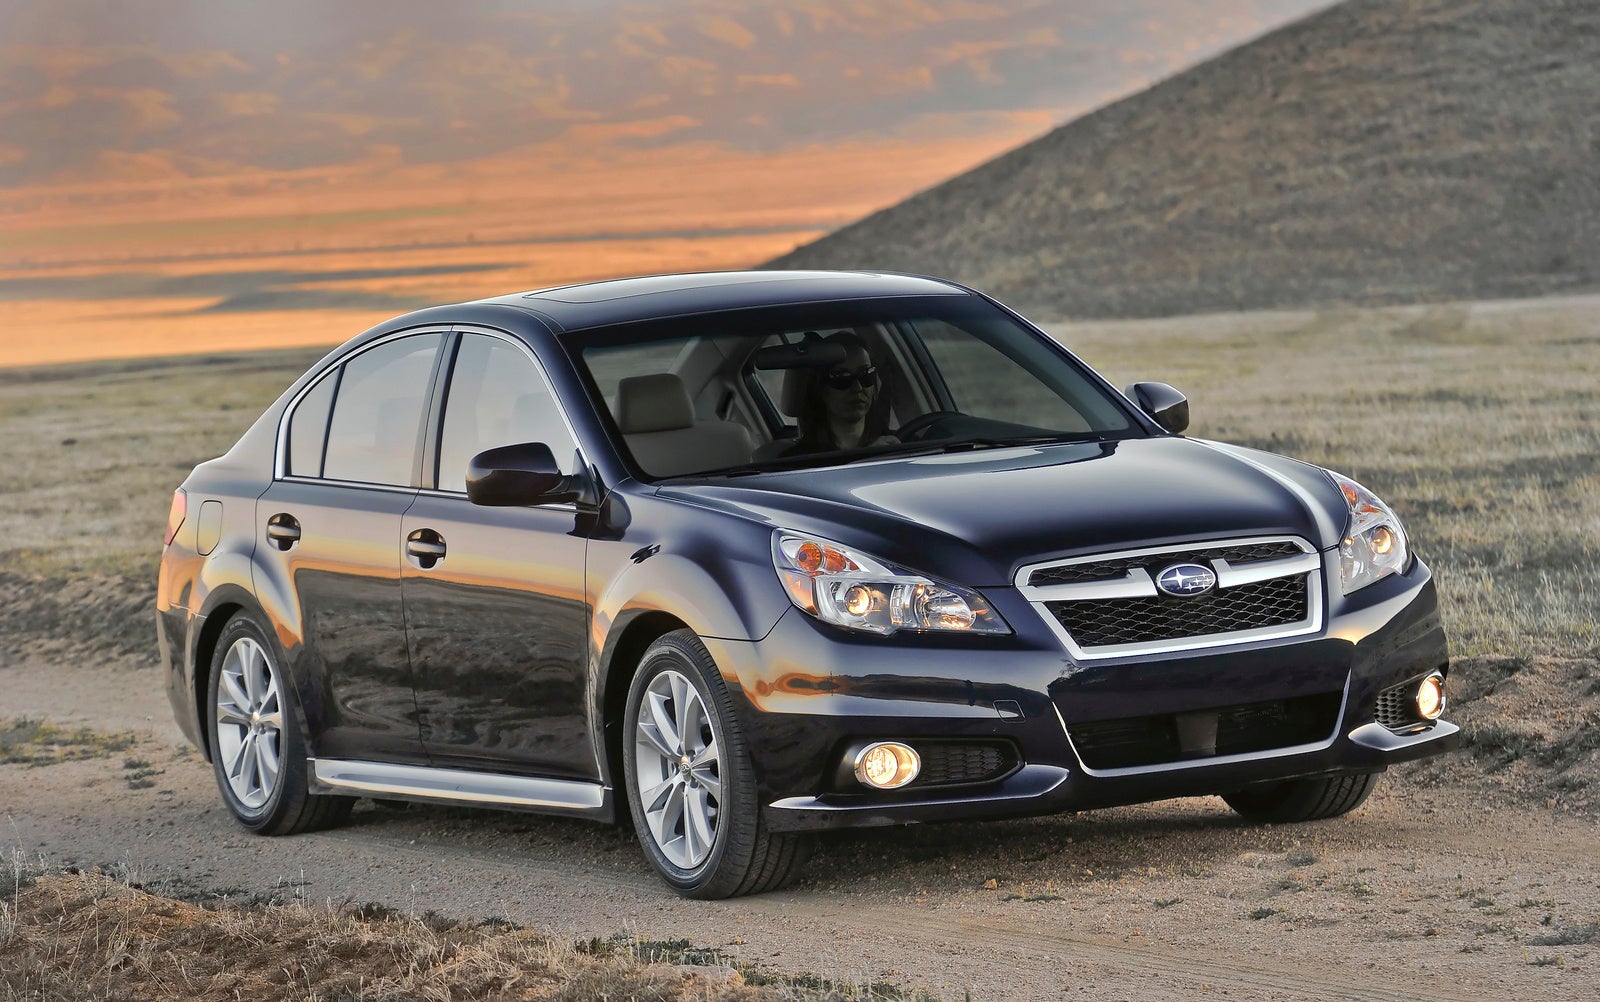 2013 Subaru Legacy - Pictures - CarGurus